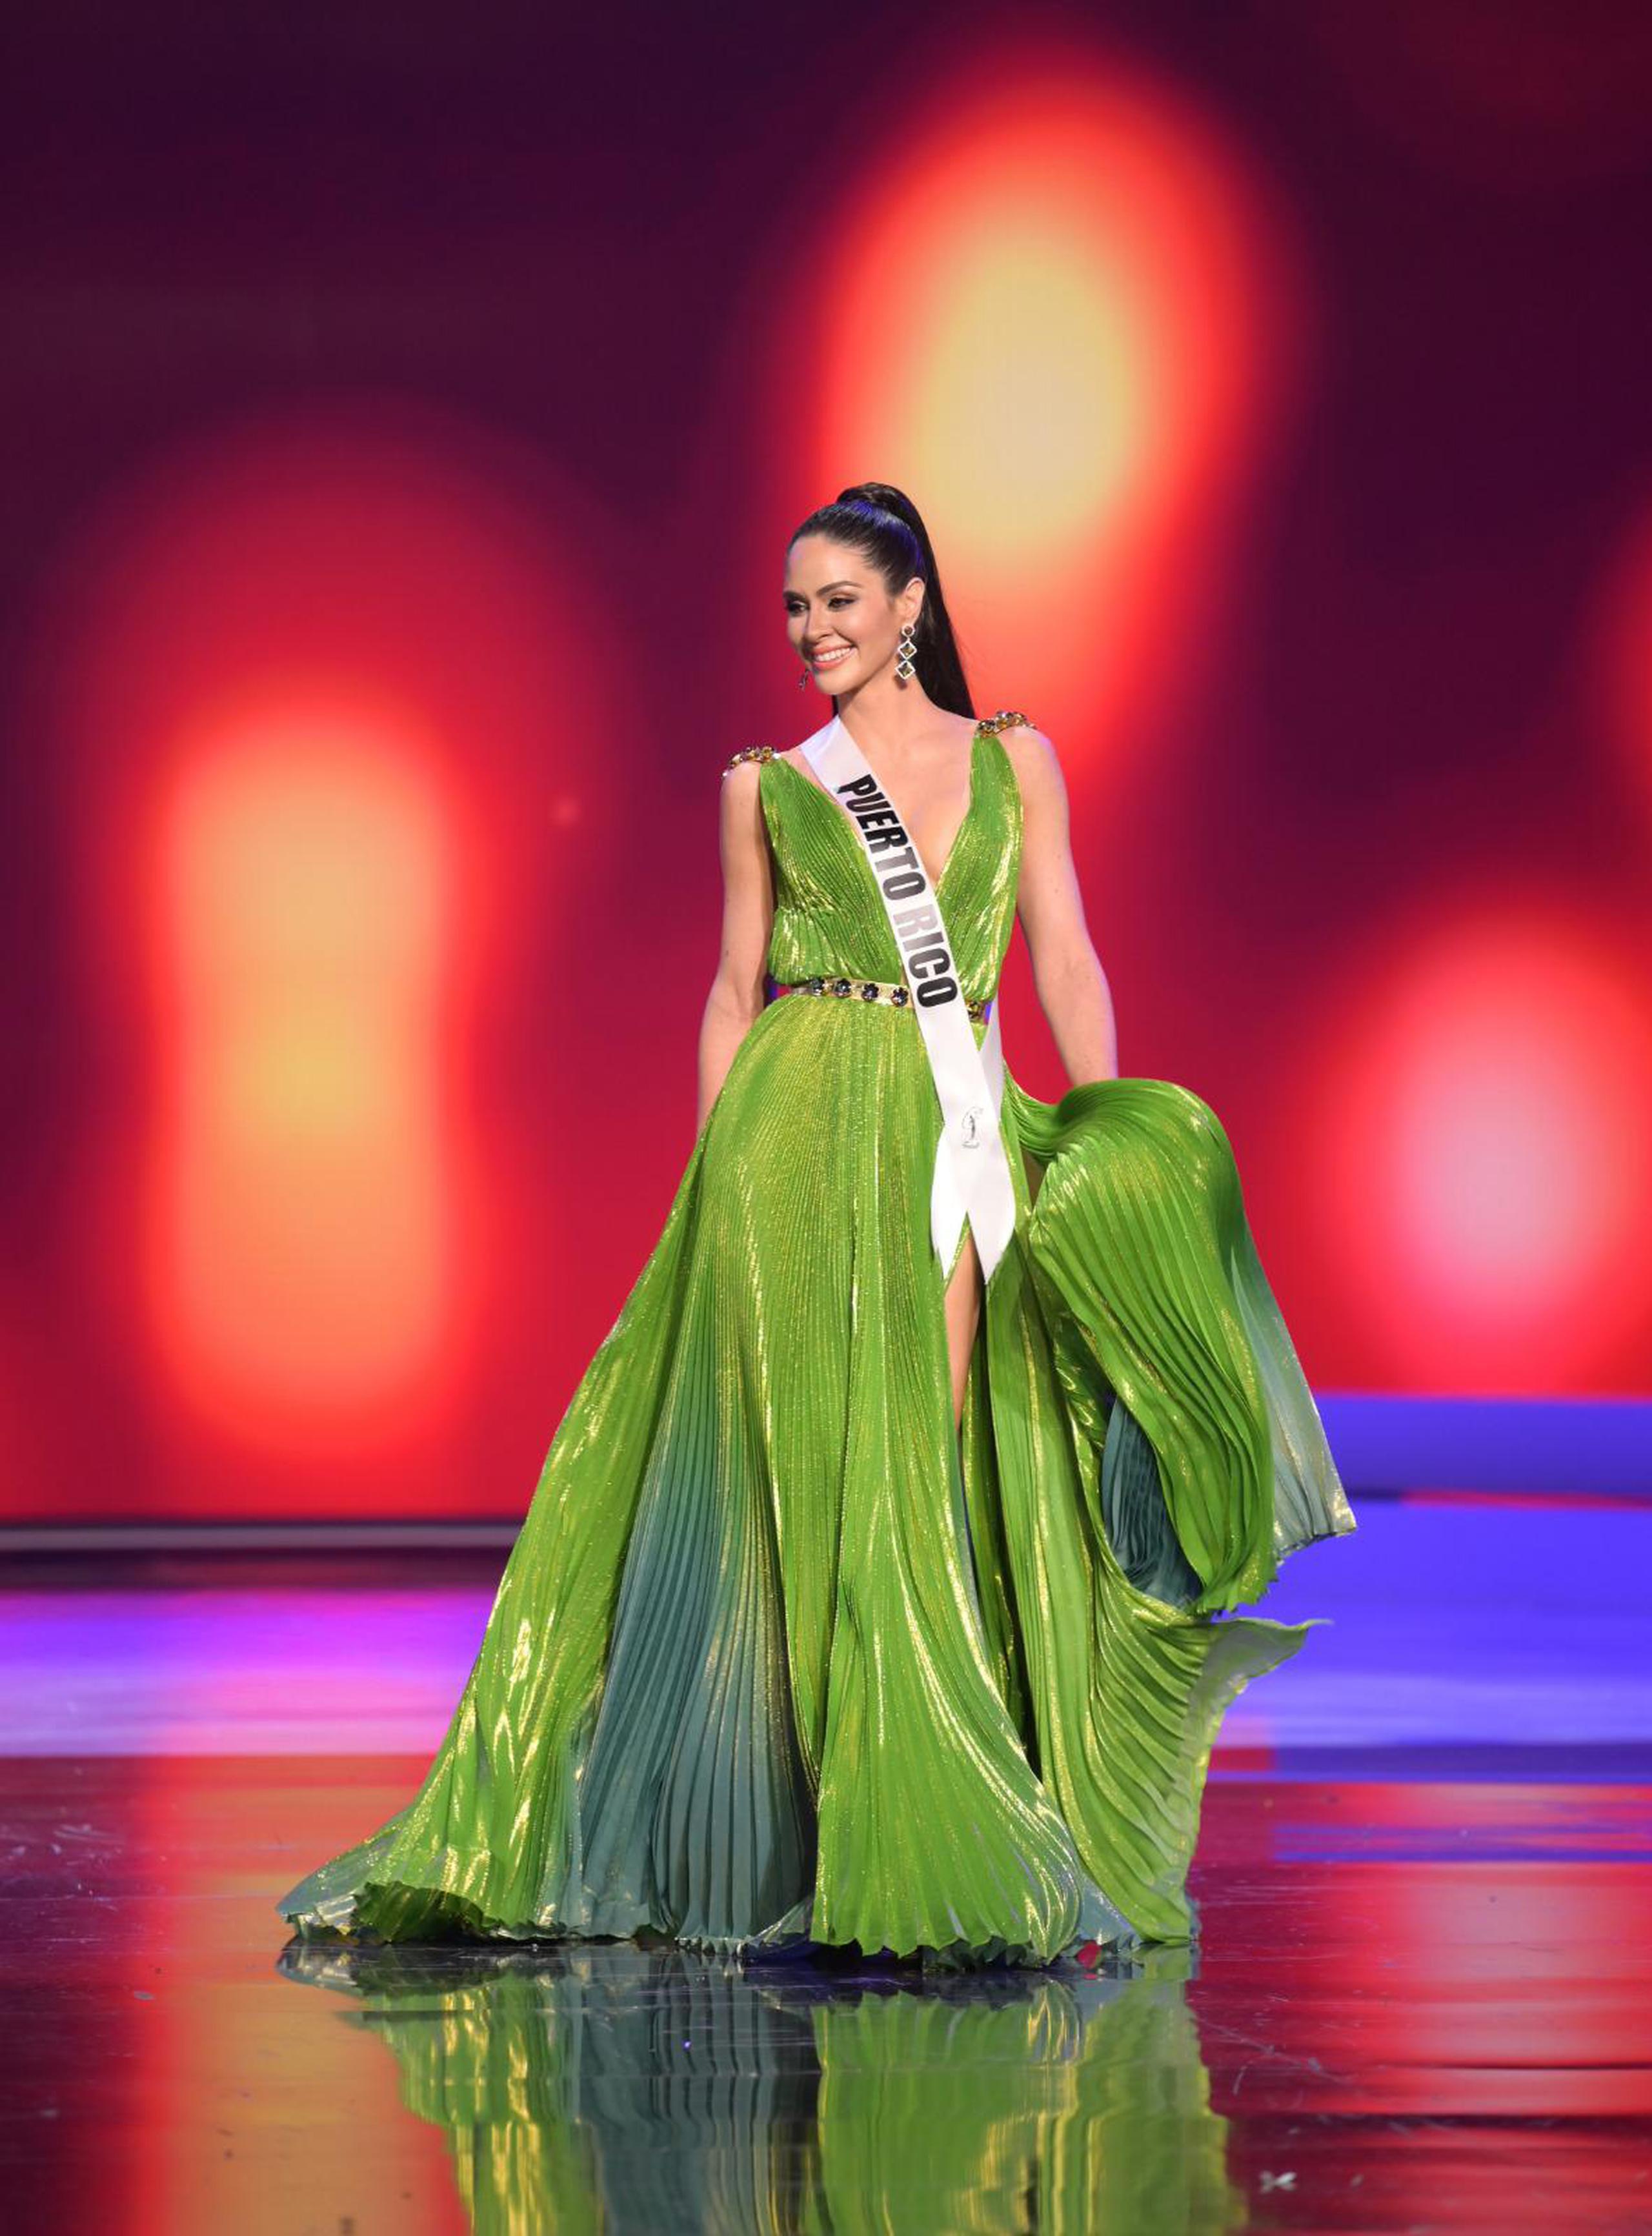 Estefanía Soto deslumbró a su paso por la competencia preliminar de Miss Universe 2021 con el vestido verde de Eclíptica.